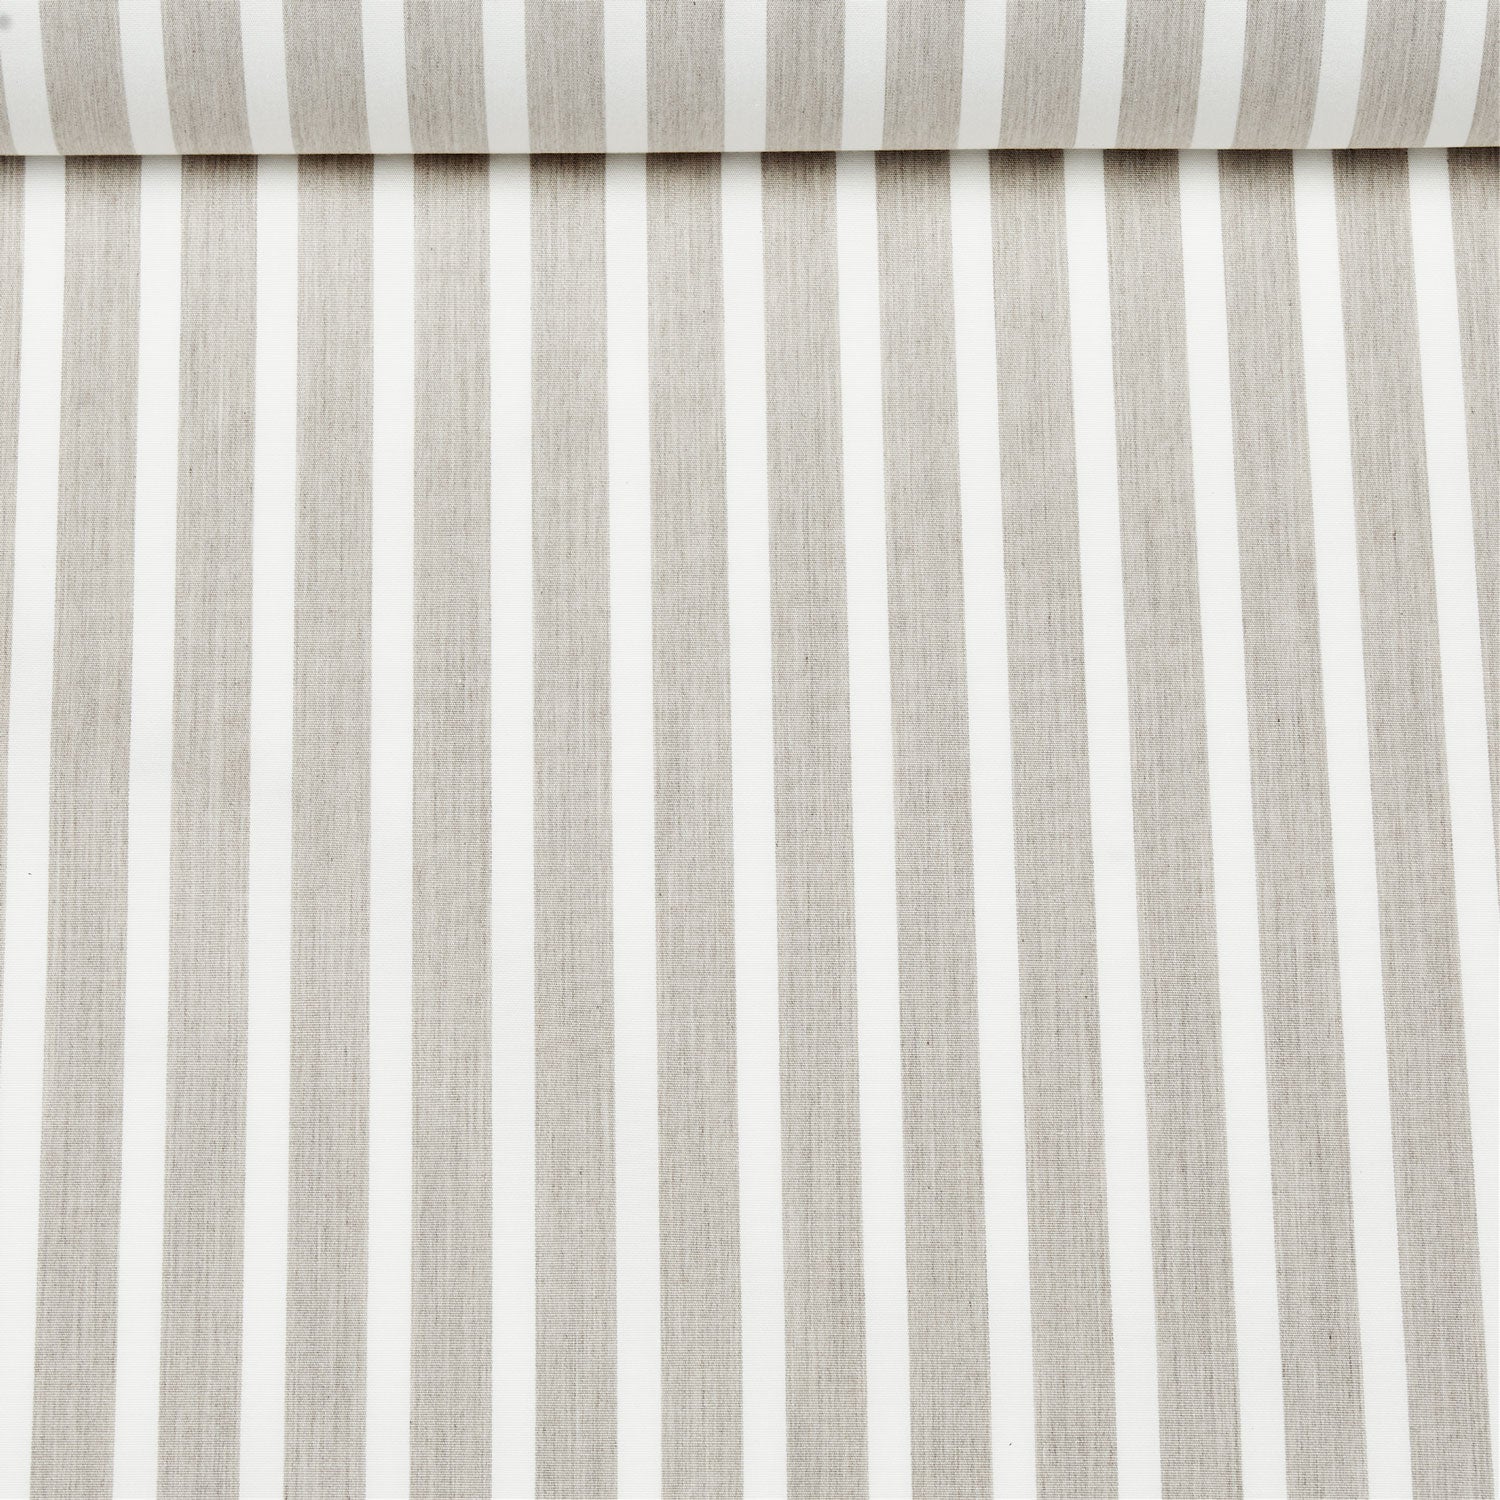 Tissu acrylique teint dans la masse, rayé beige et blanc, utilisé pour les flotteurs de piscine de luxe.